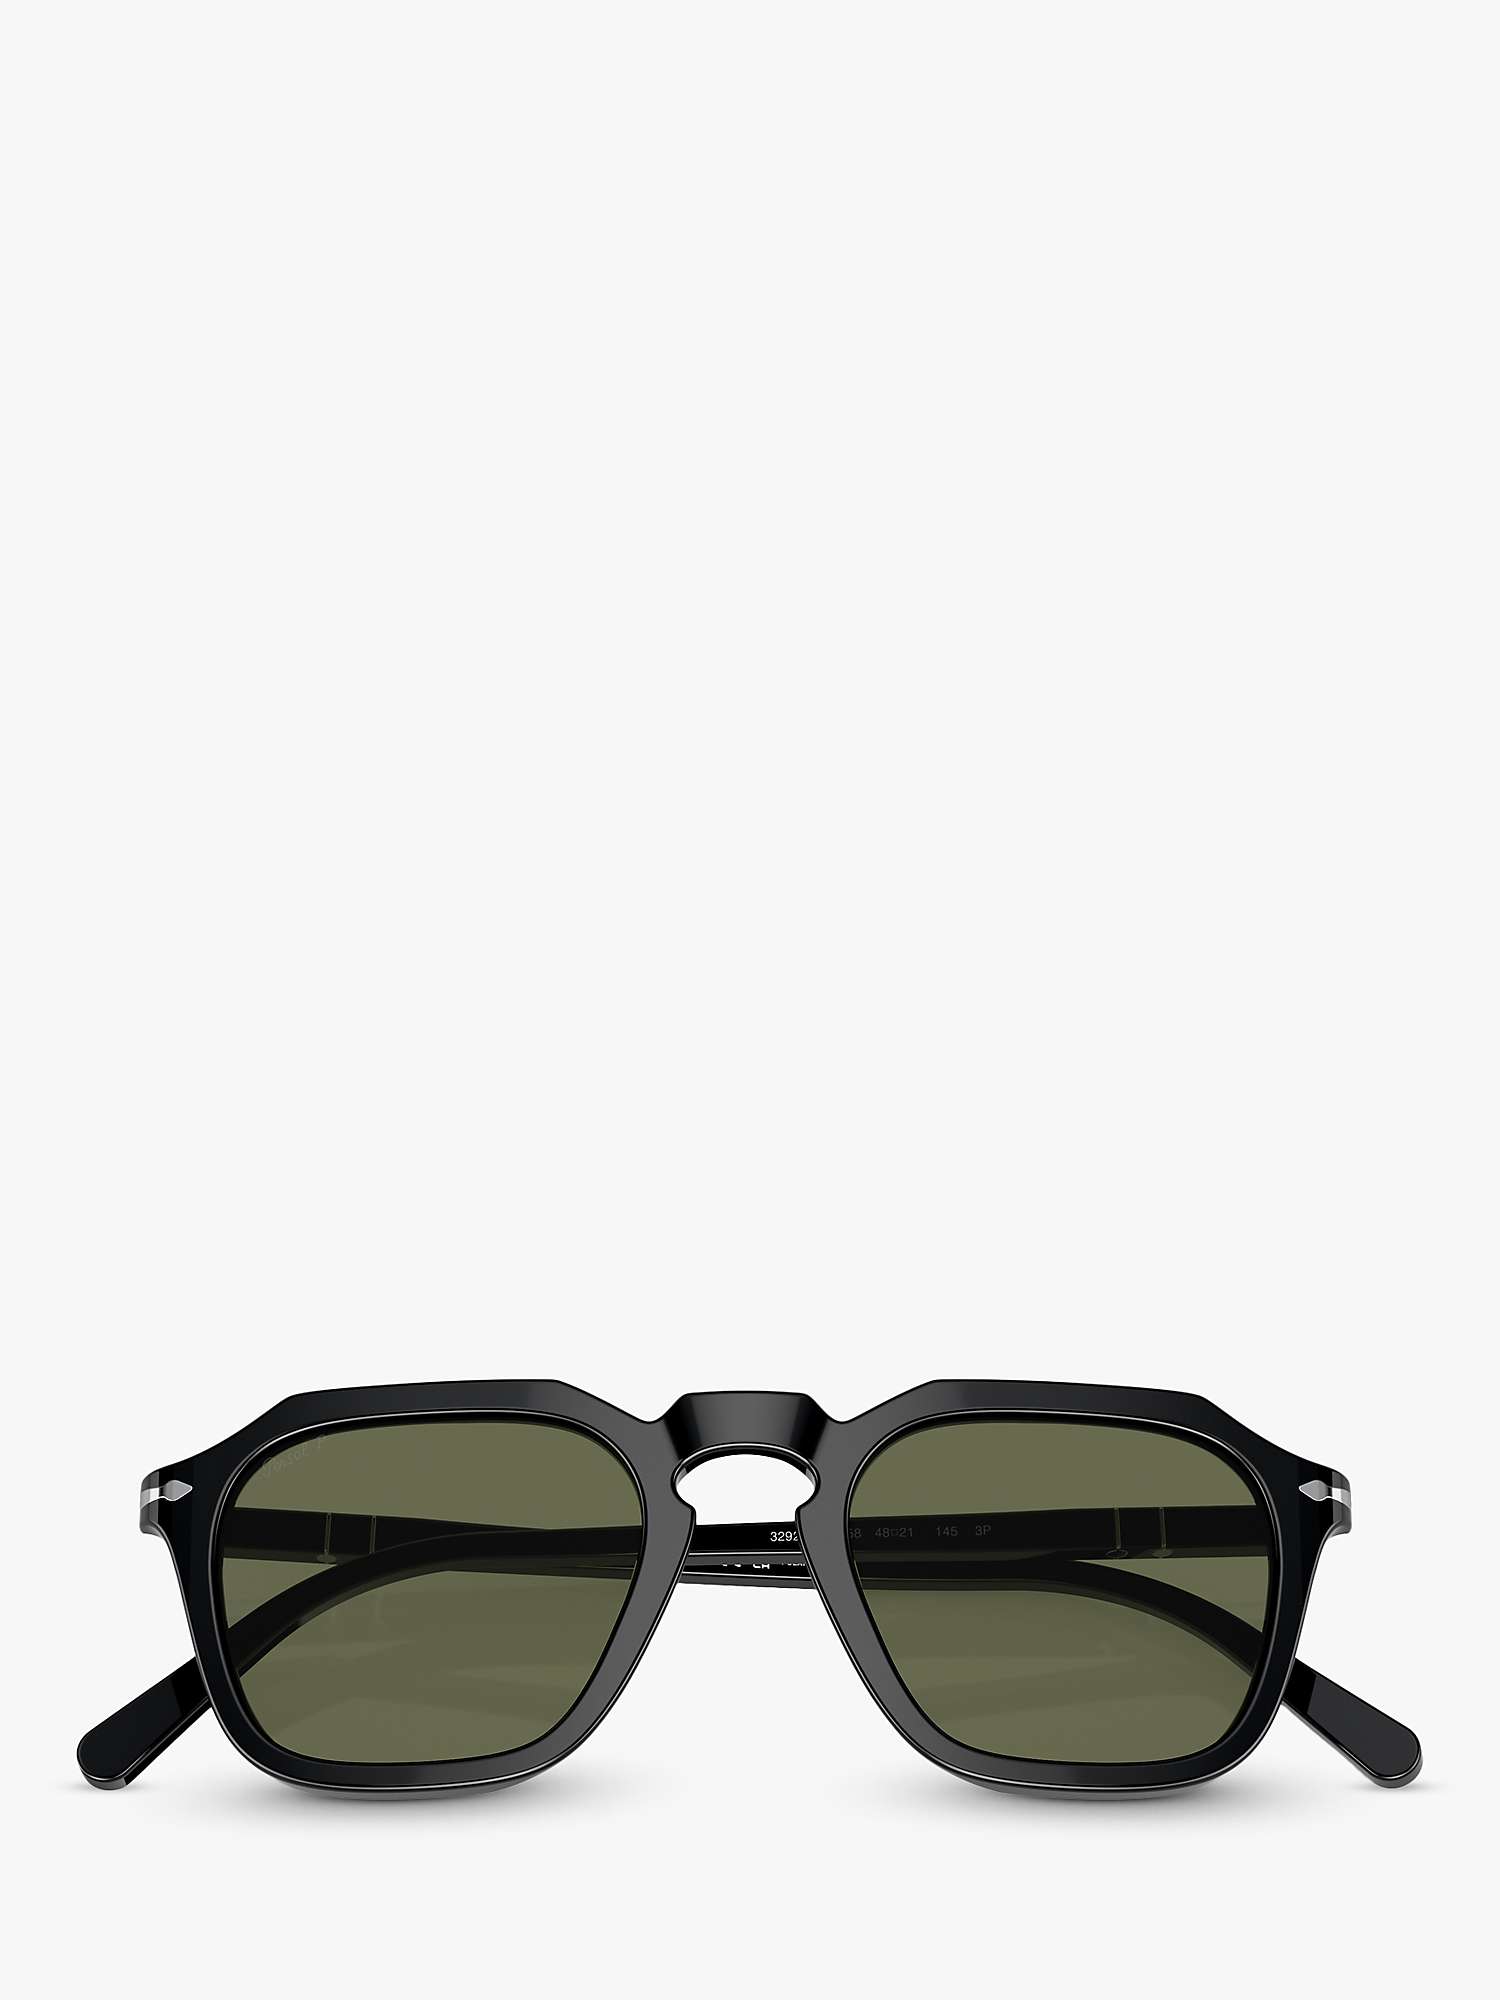 Buy Persol PO3292S Polarised Square Sunglasses Online at johnlewis.com